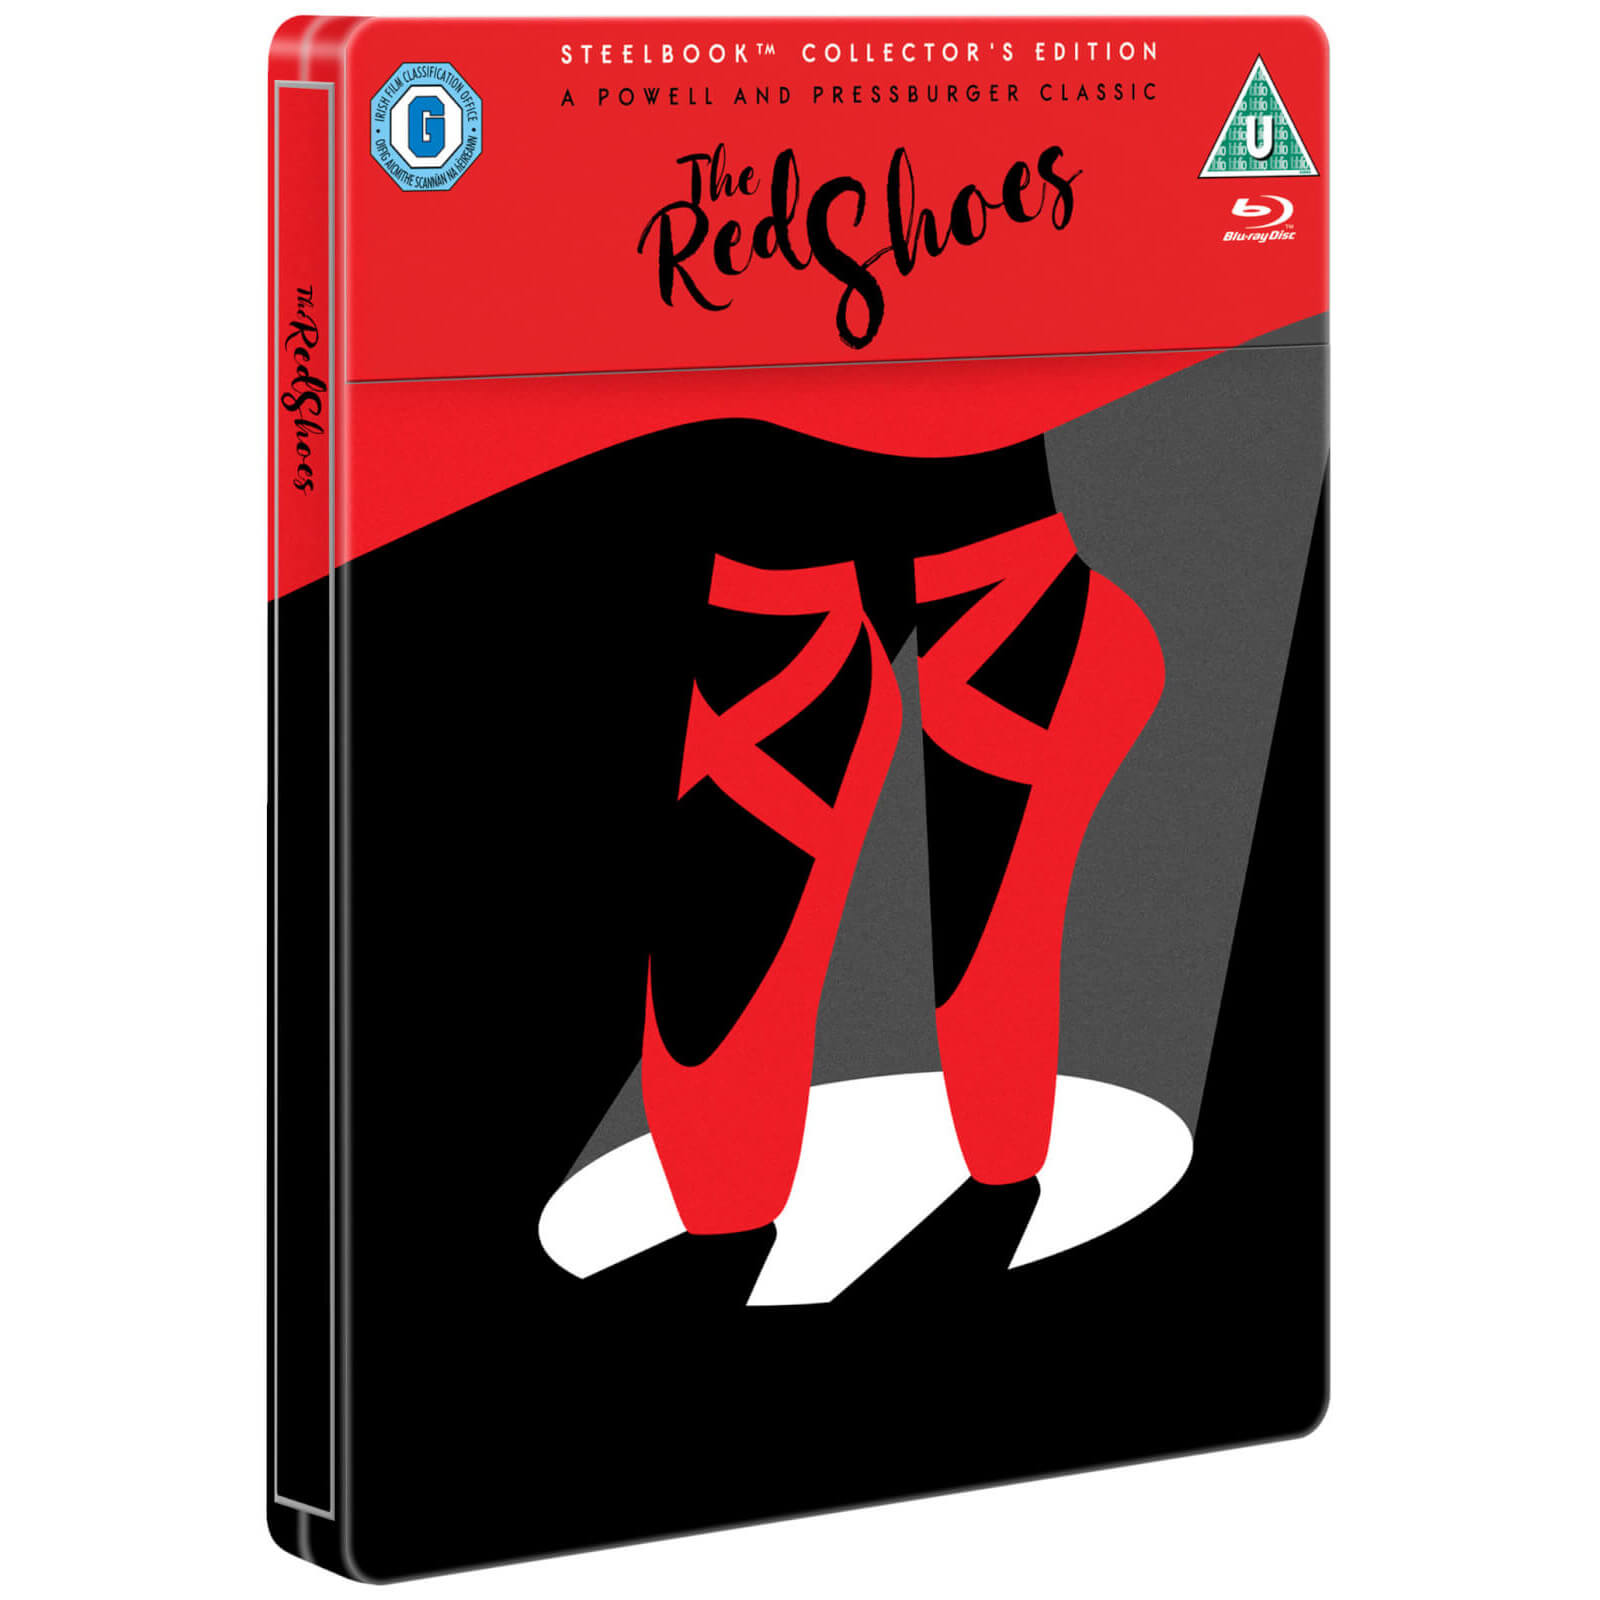 Die roten Schuhe - Limited Edition Steelbook von ITV Home Entertainment